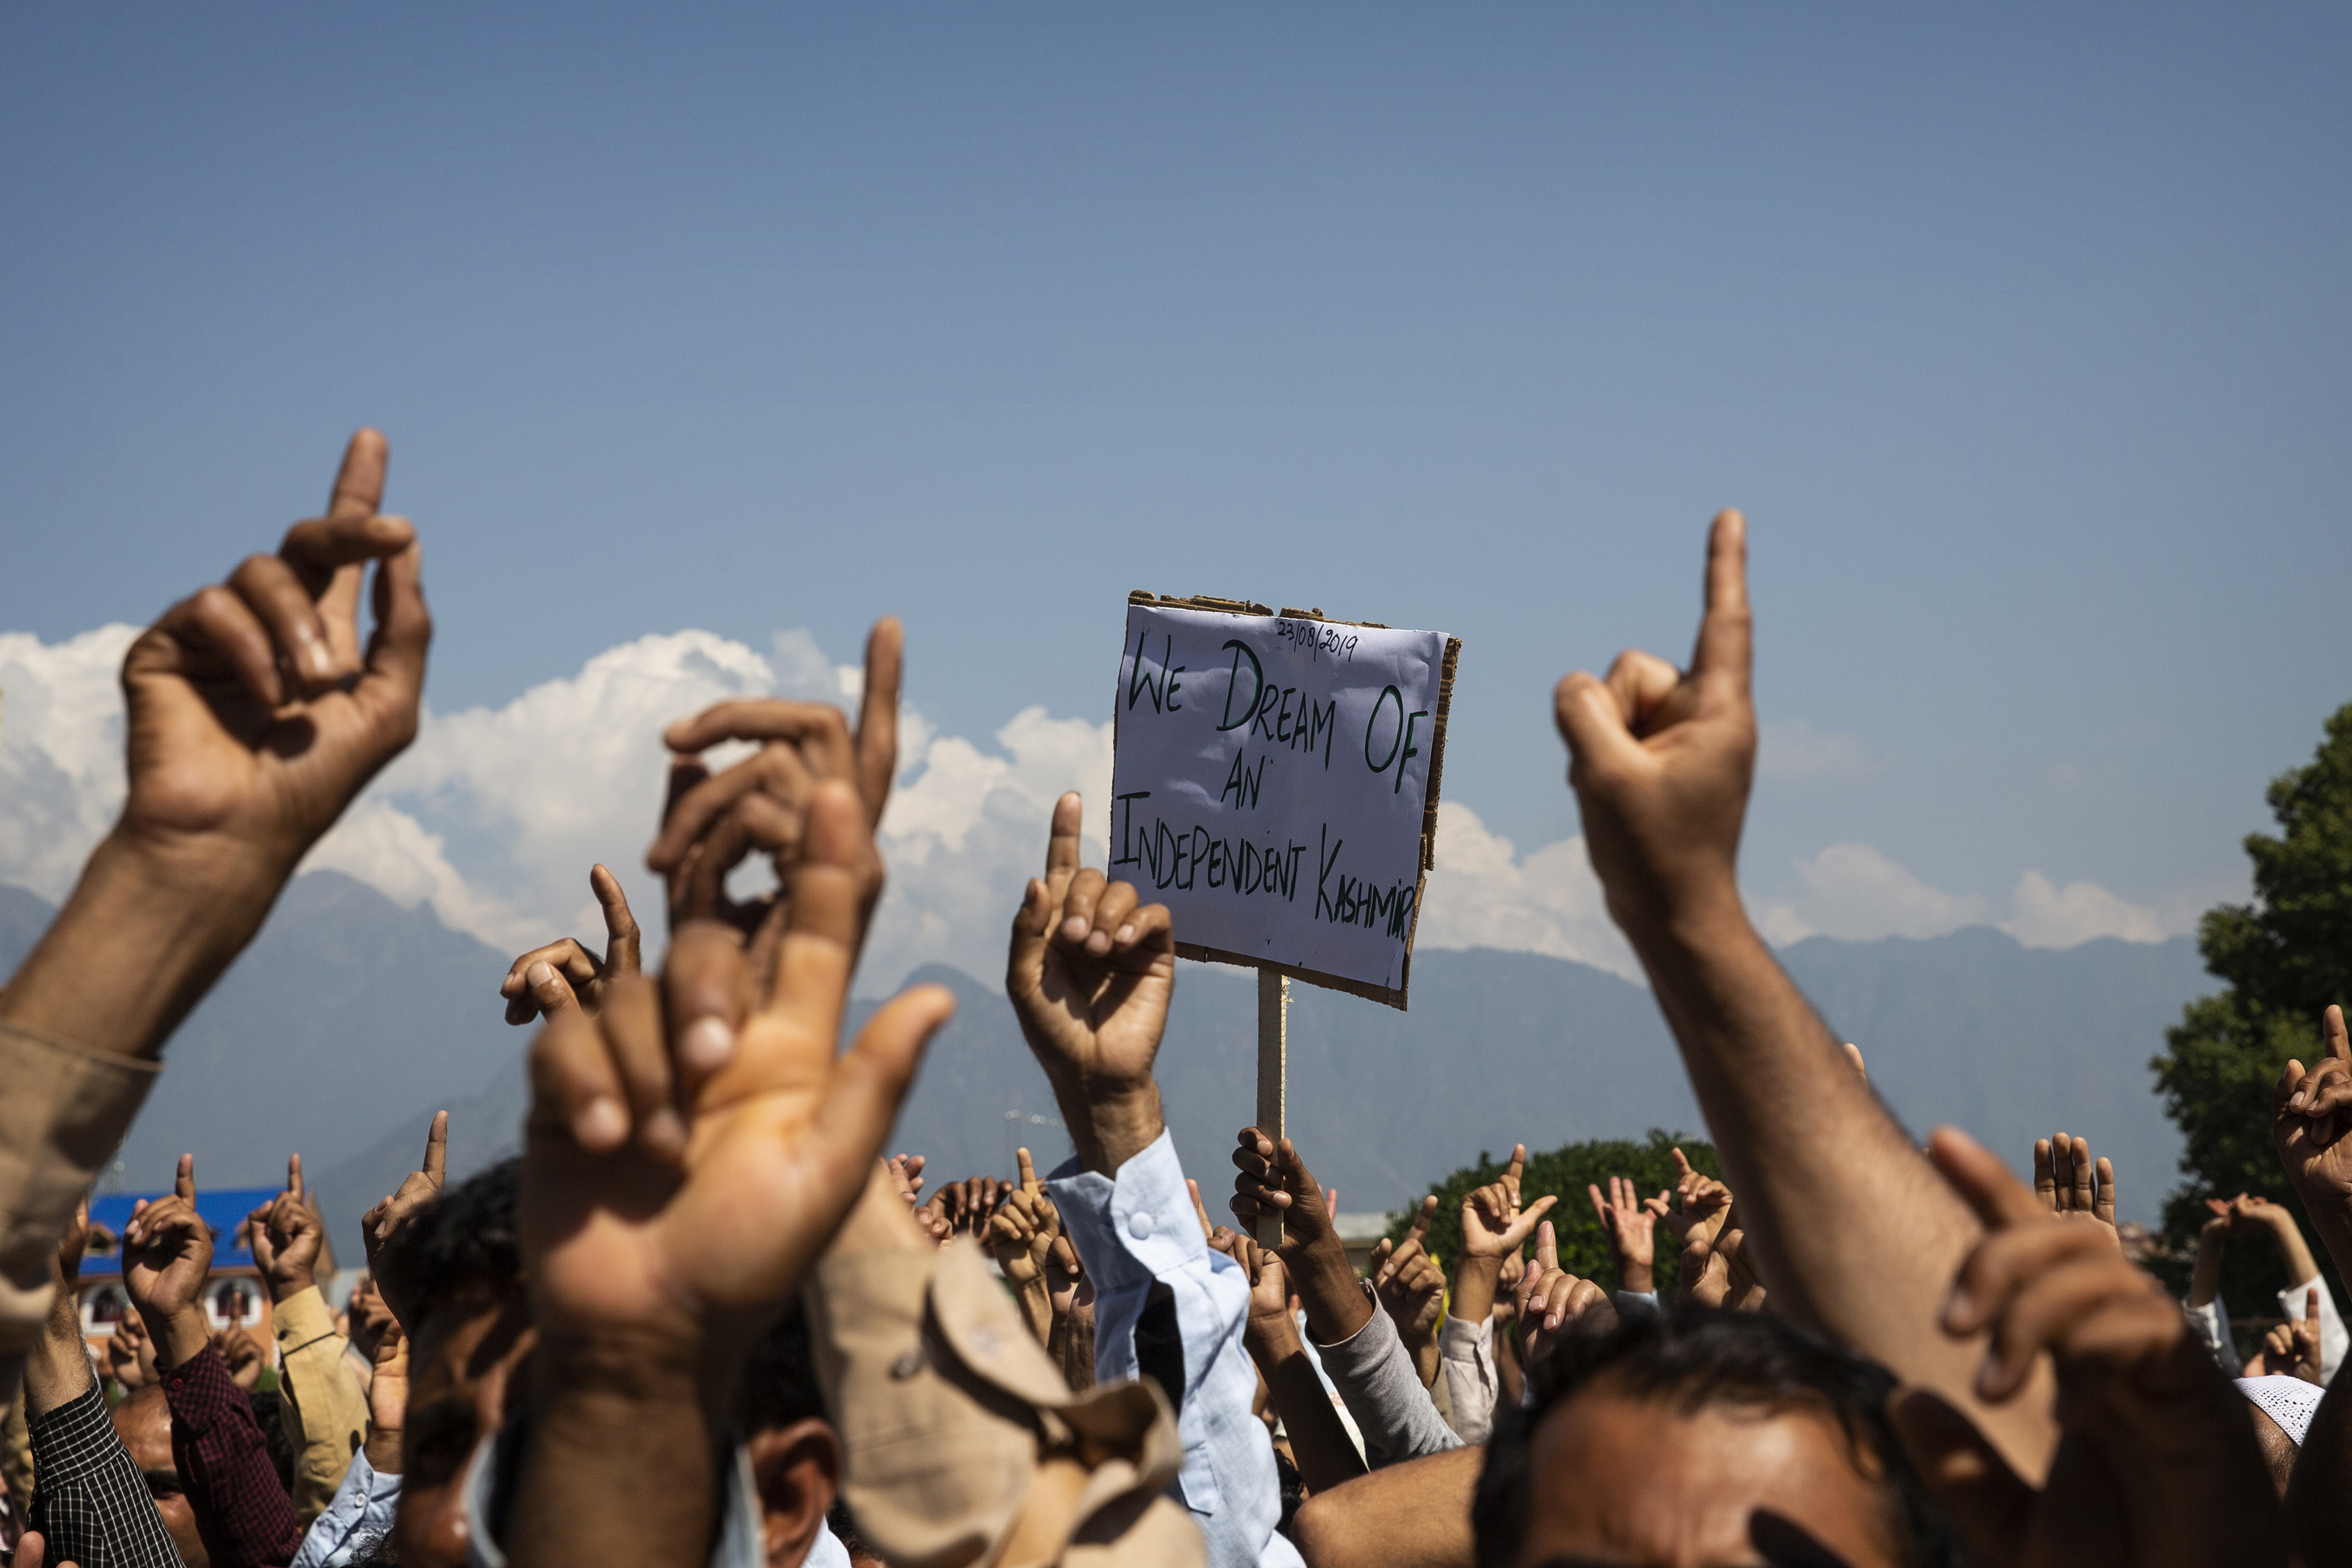 Los hombres de Cachemira gritan consignas de libertad durante una protesta contra el control de Nueva Delhi sobre la región en disputa, después de las oraciones del viernes en las afueras de Srinagar, Cachemira controlada por los indios, el 23 de agosto de 2019. (Foto AP / Dar Yasin)